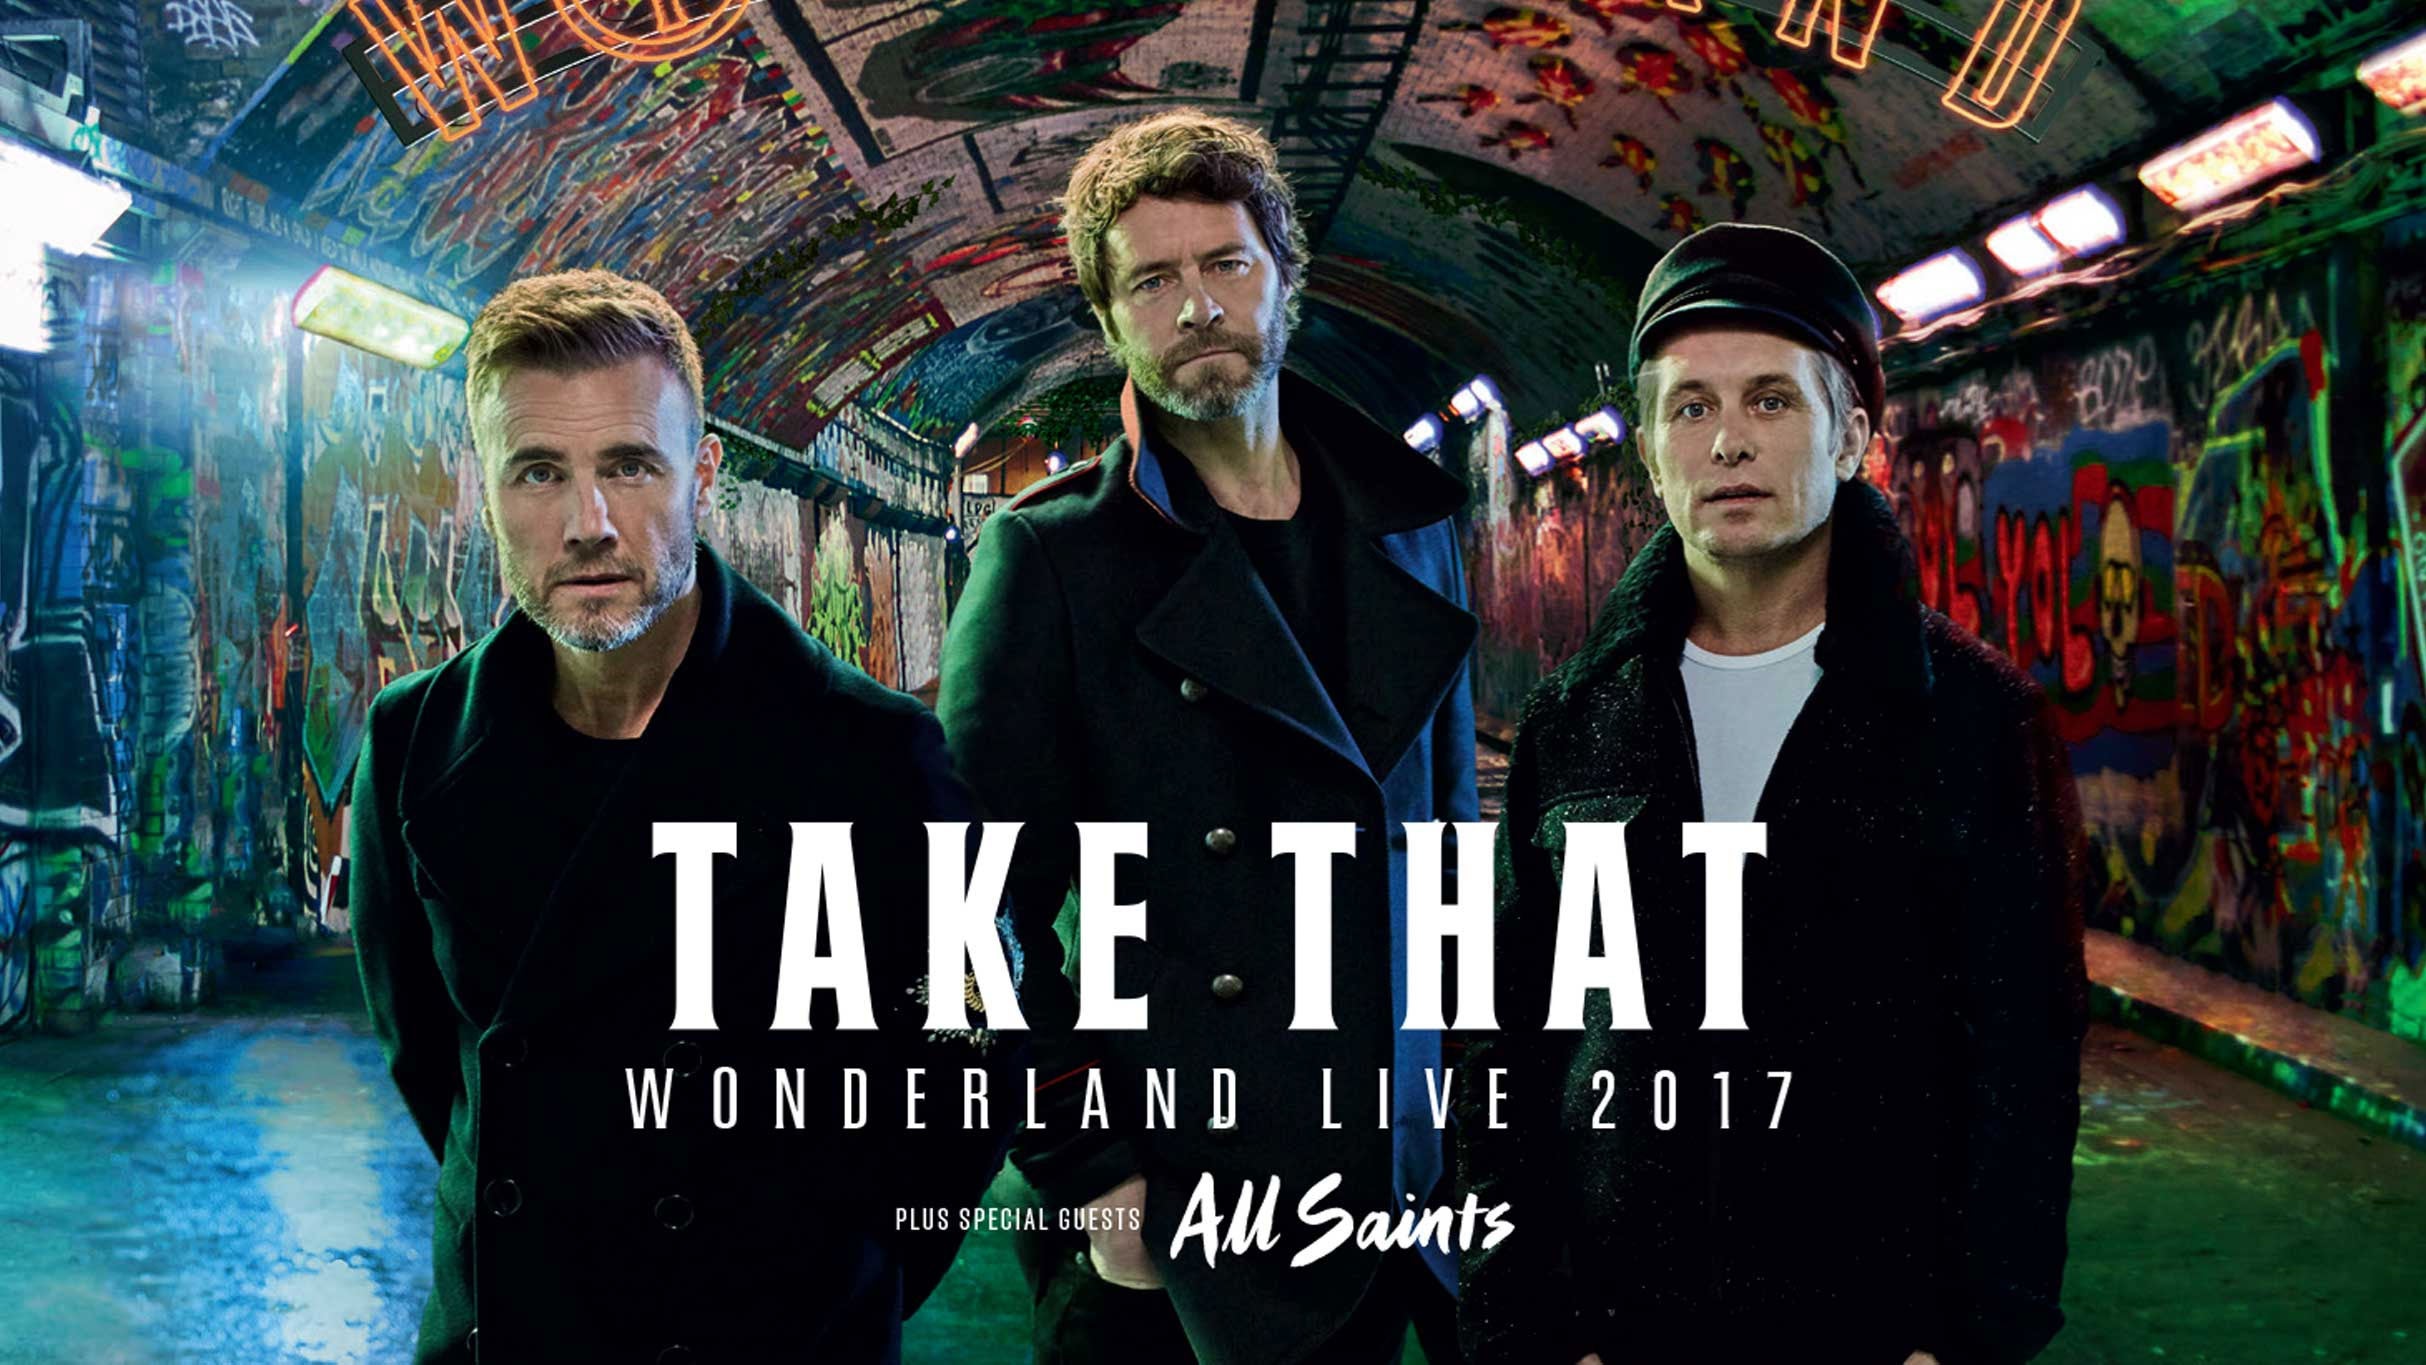 Take That - This Life Under the Stars - European Tour